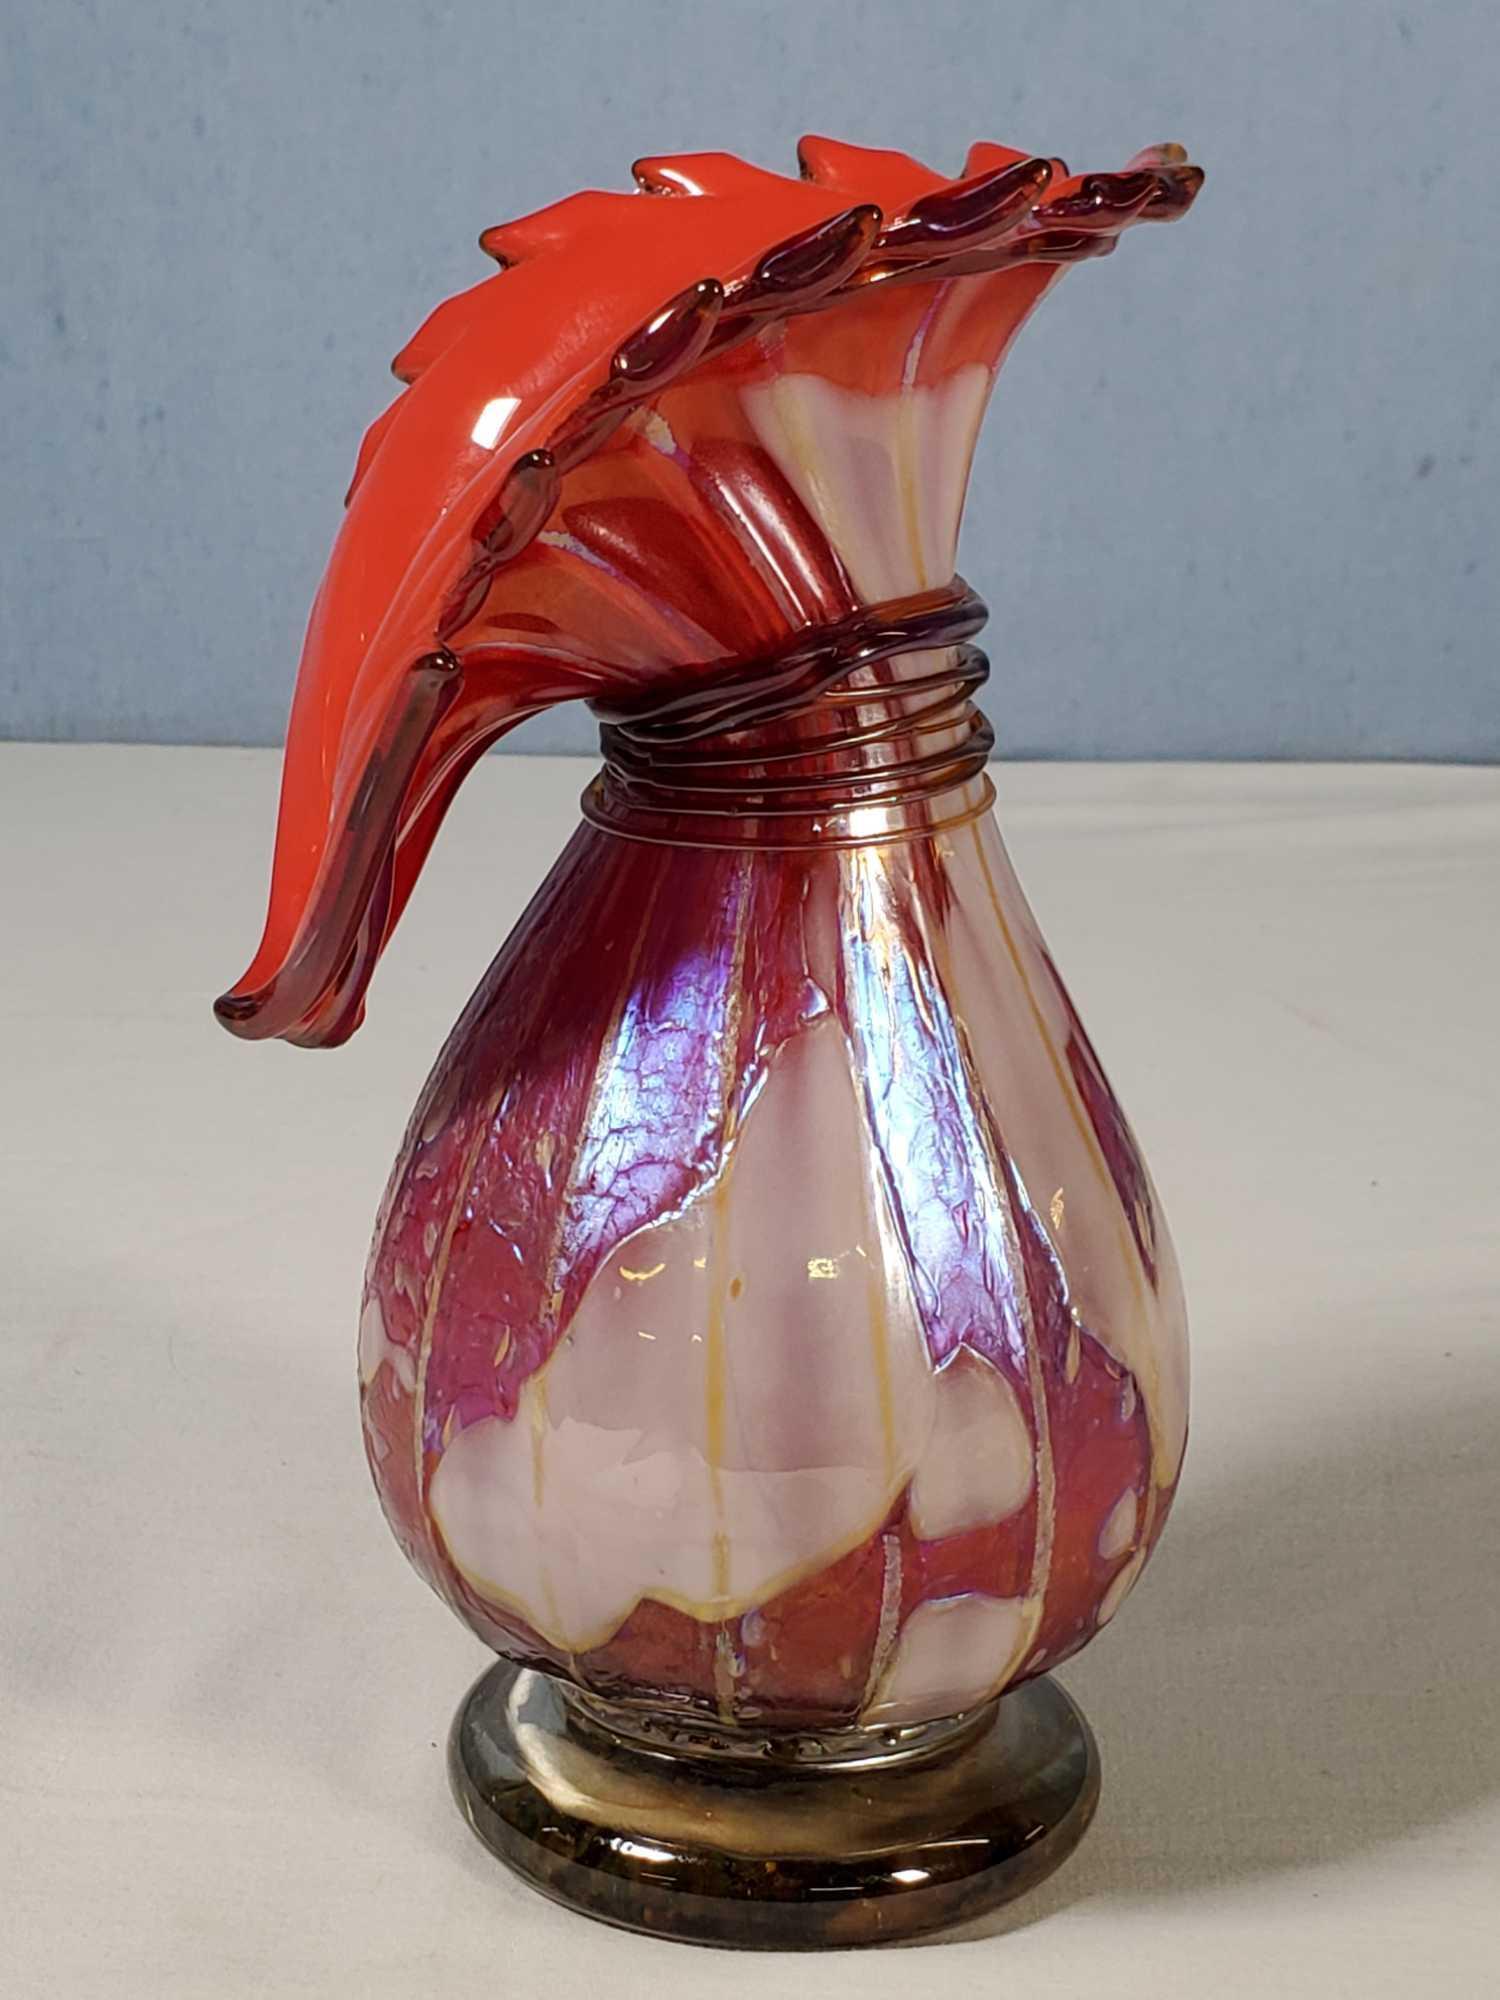 2 Artist Signed Art Glass Vases incl. Robert Held